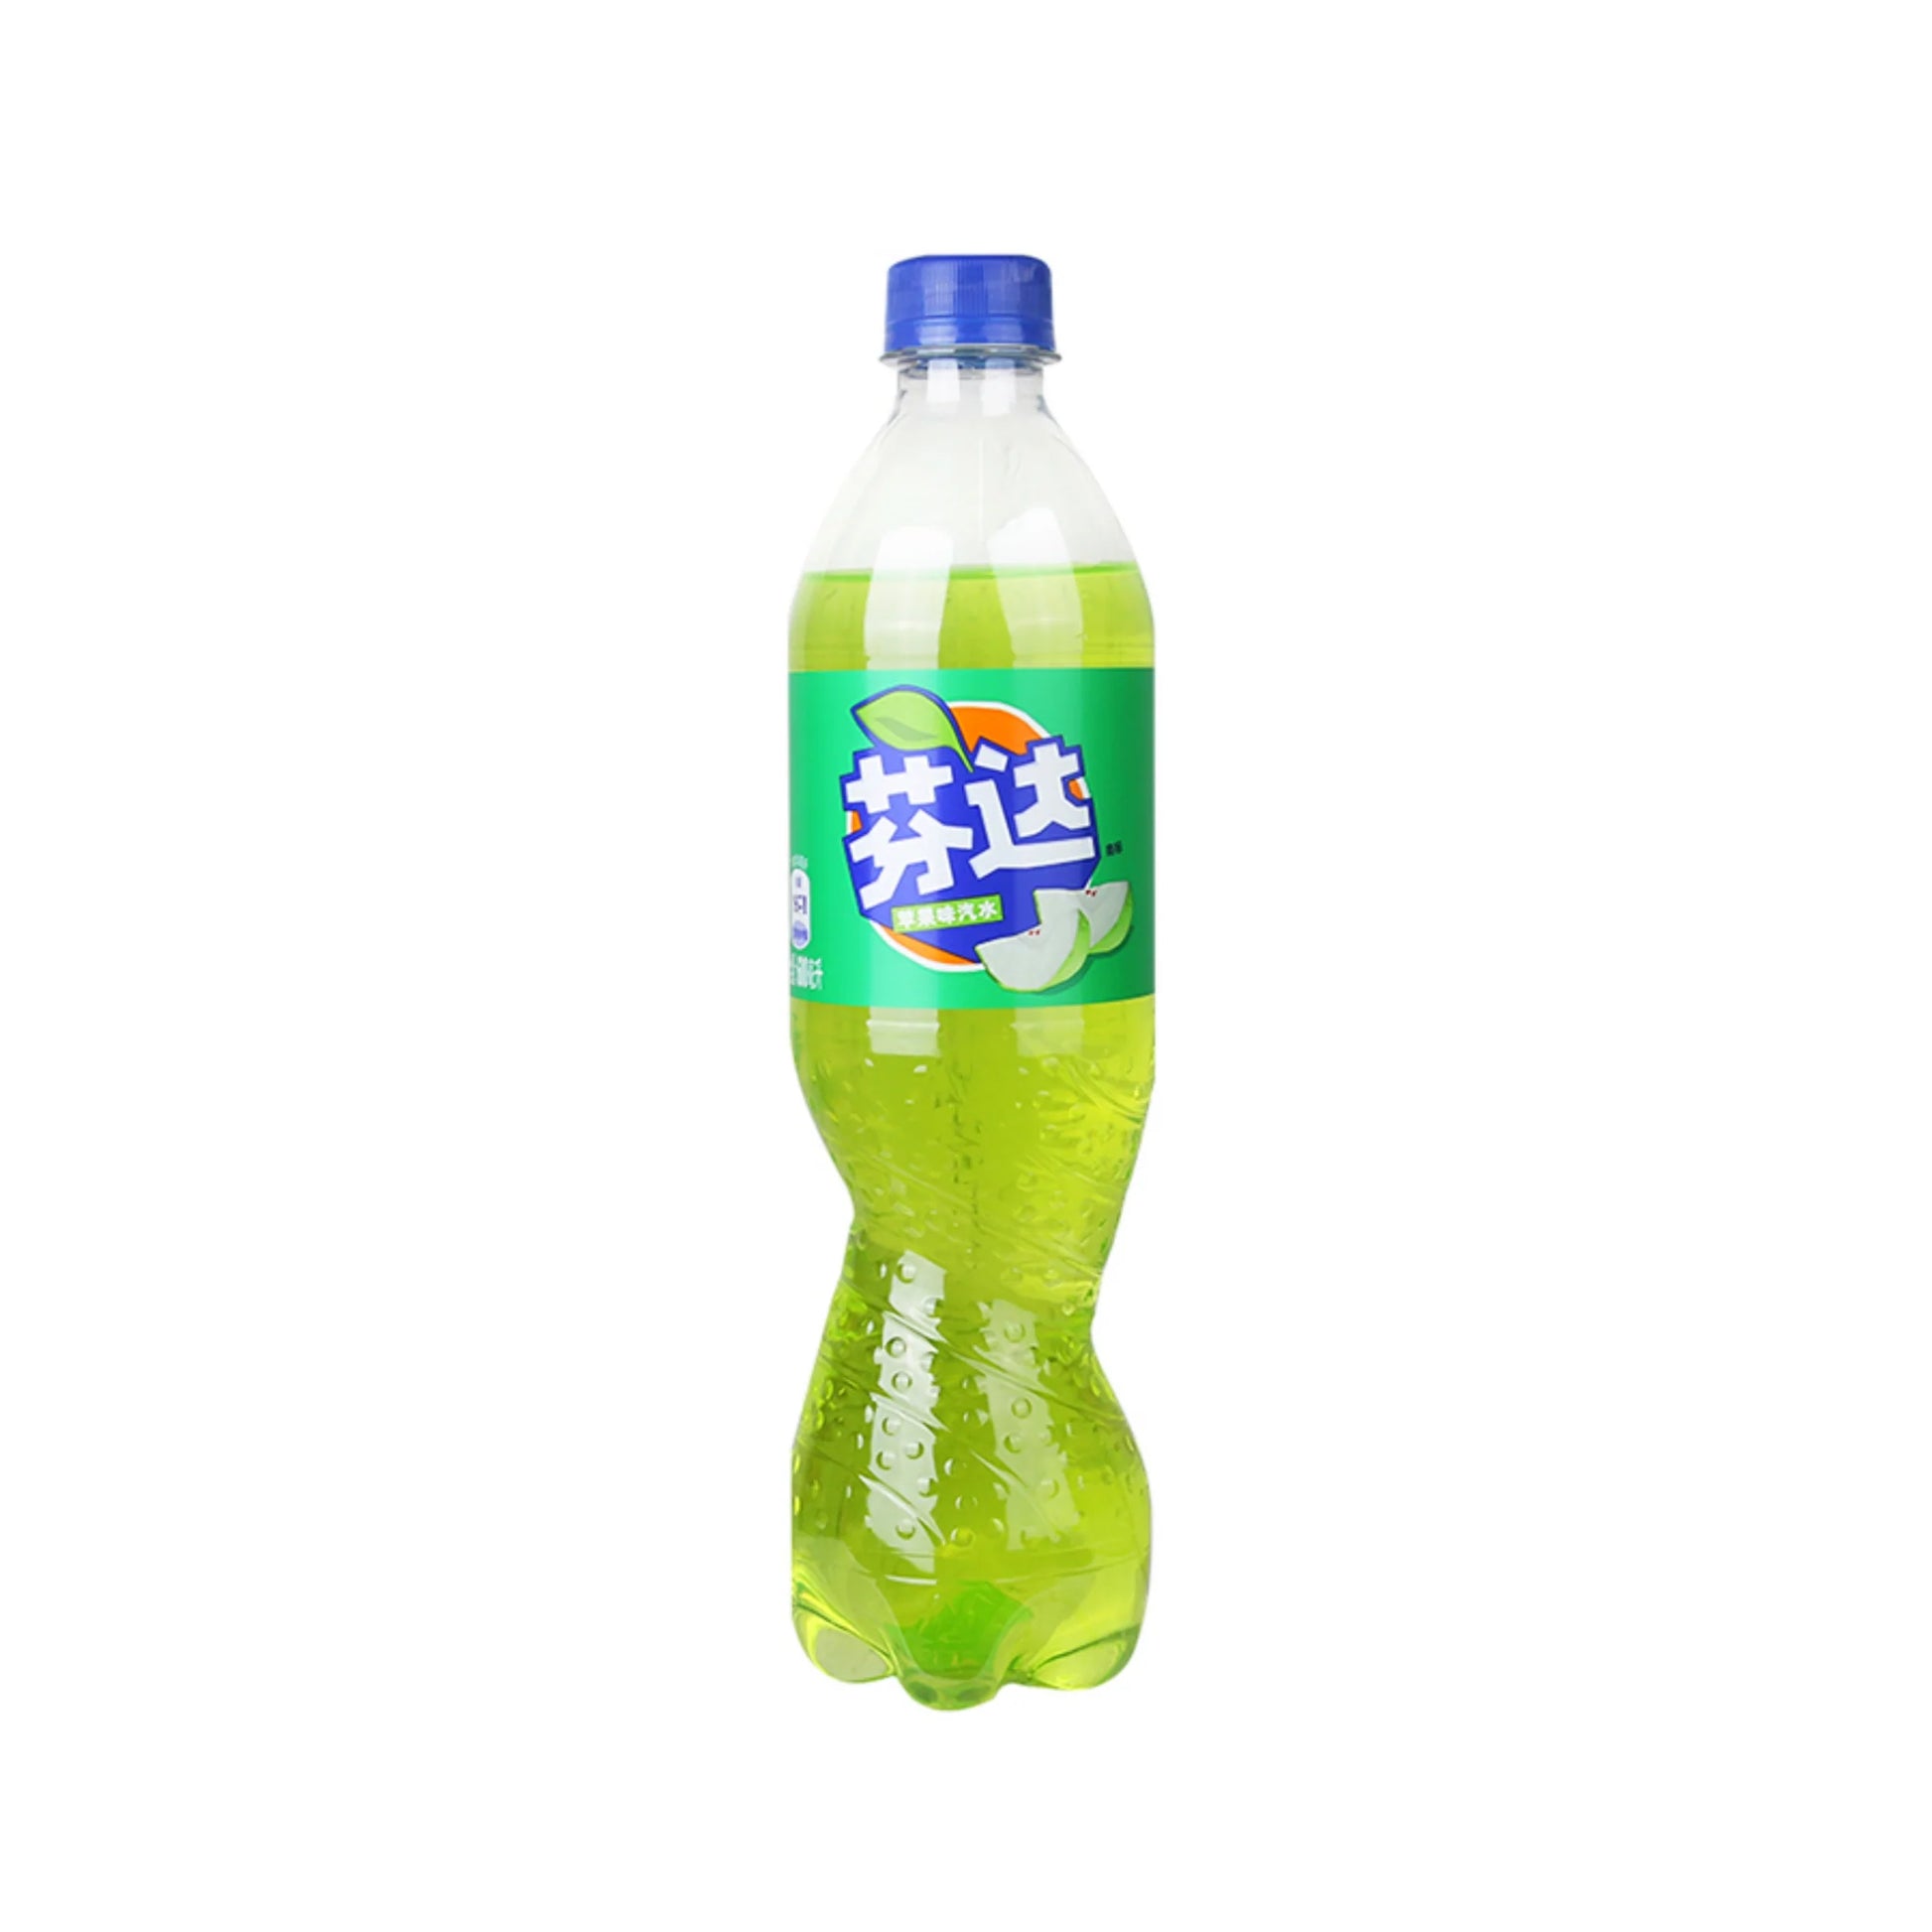 Fanta CH - Green Apple Bottle